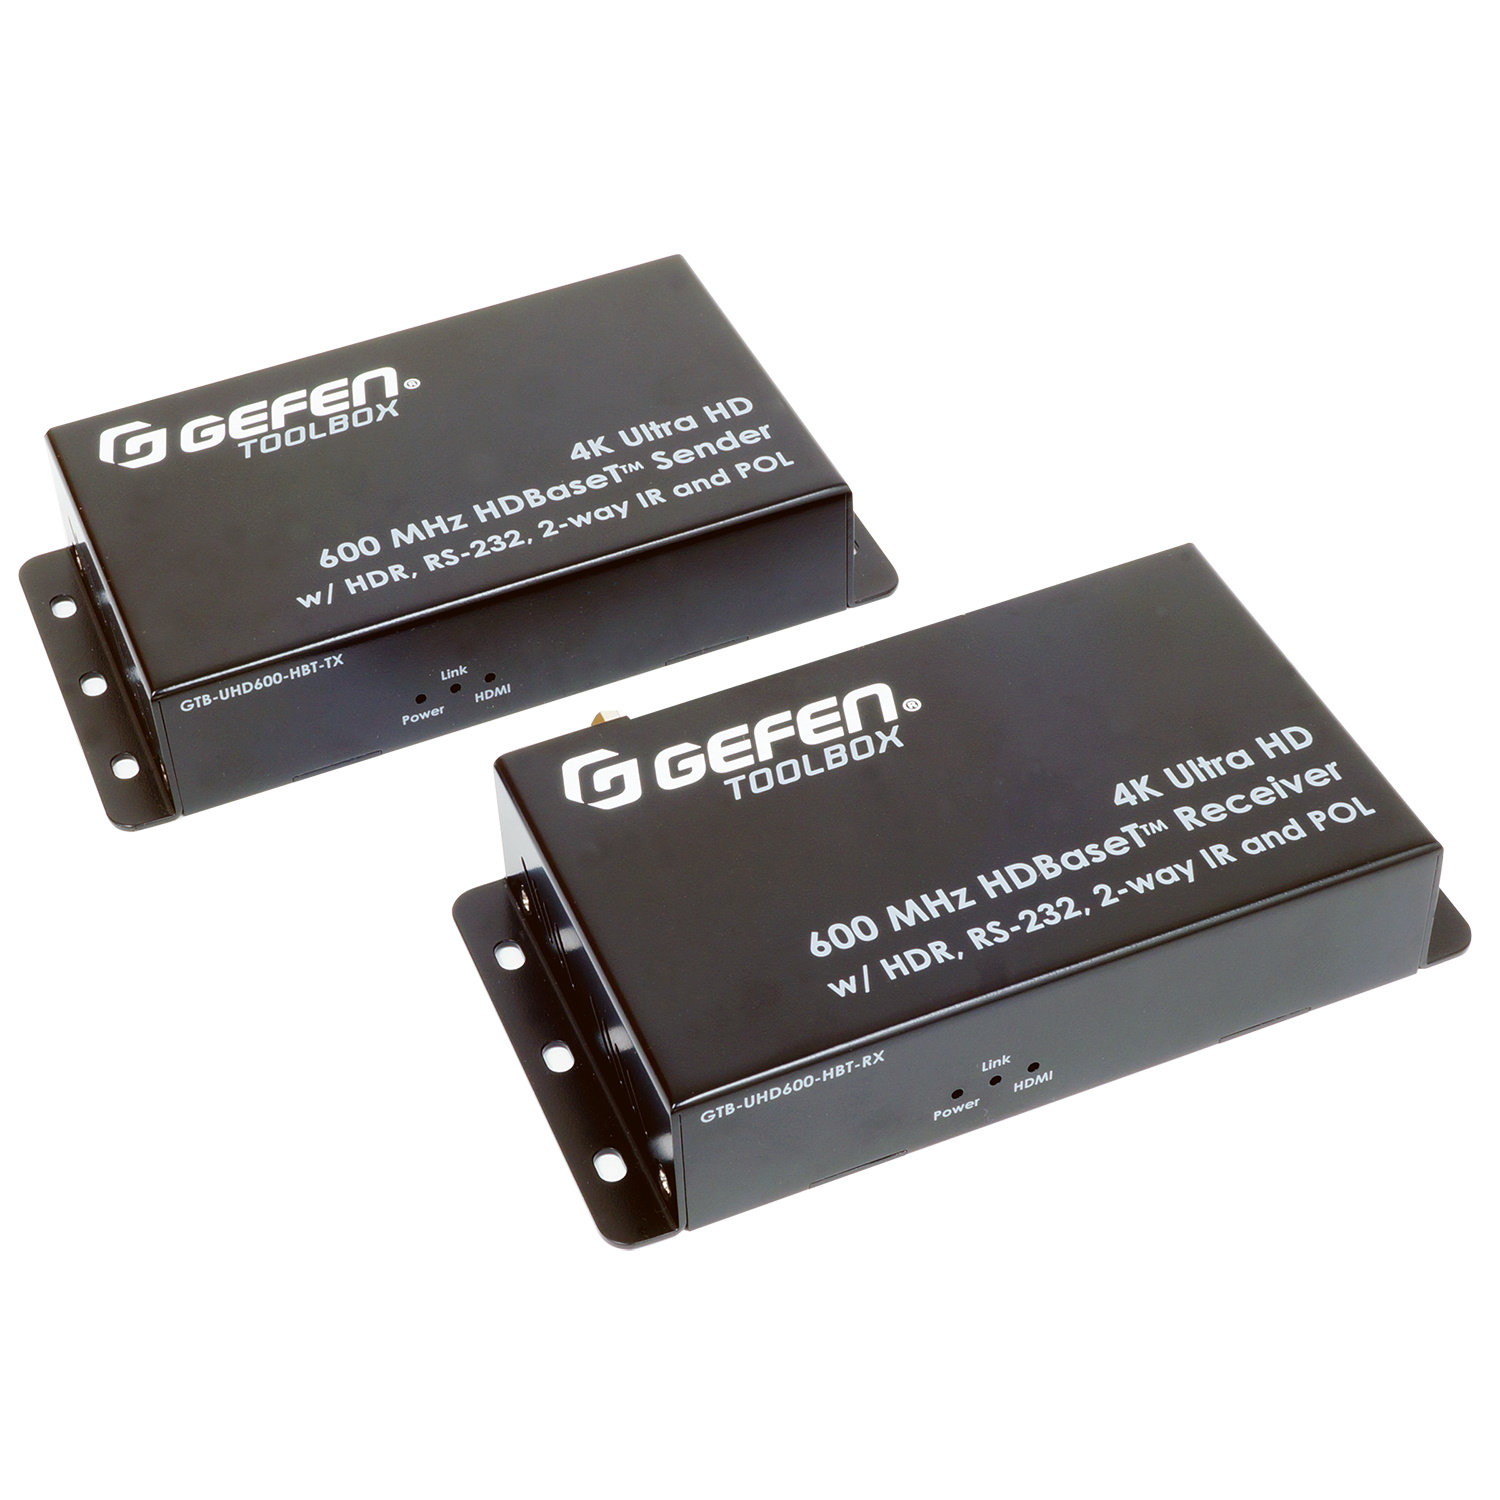 HDMI коммутаторы, разветвители, повторители Gefen GTB-UHD600-HBT hdmi коммутаторы разветвители повторители dr hd комплект приемник передатчик hdmi по ip dr hd ex 120 lir hd